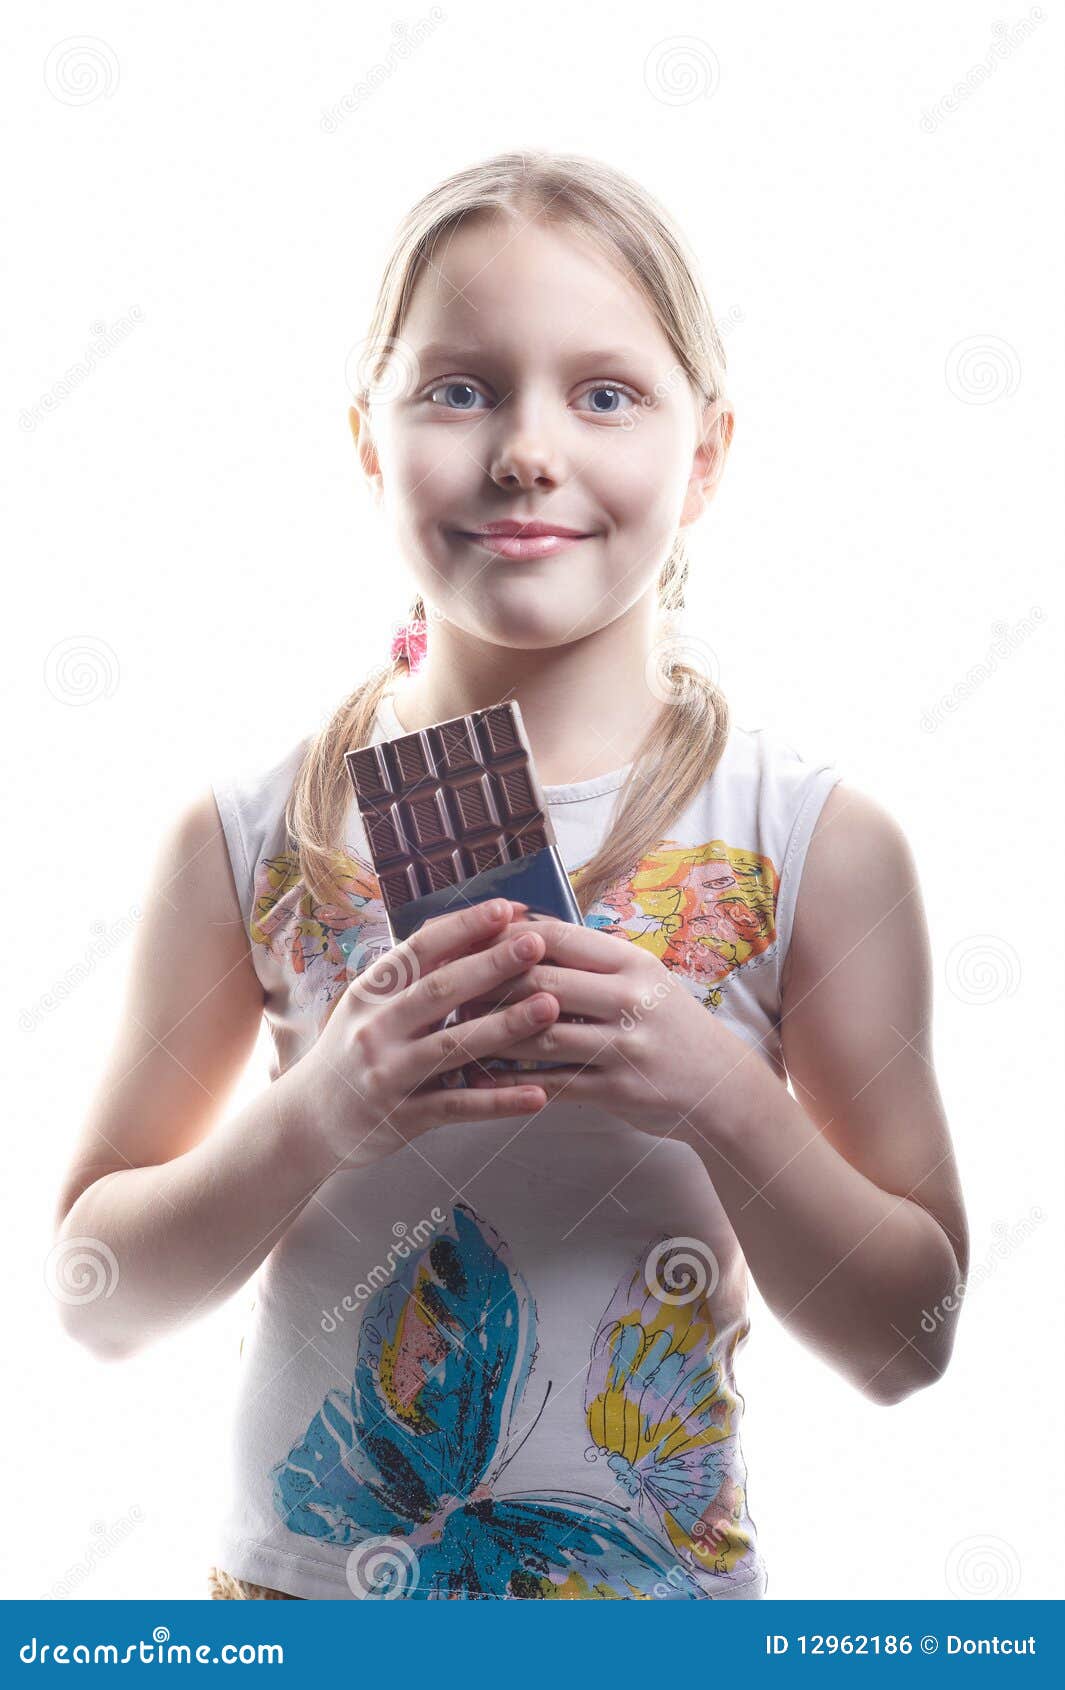 巧克力吃女孩 库存图片. 图片 包括有 饮食, 滑稽, 快乐, 食物, 巧克力, 帽子, 享用, 点心 - 109418549